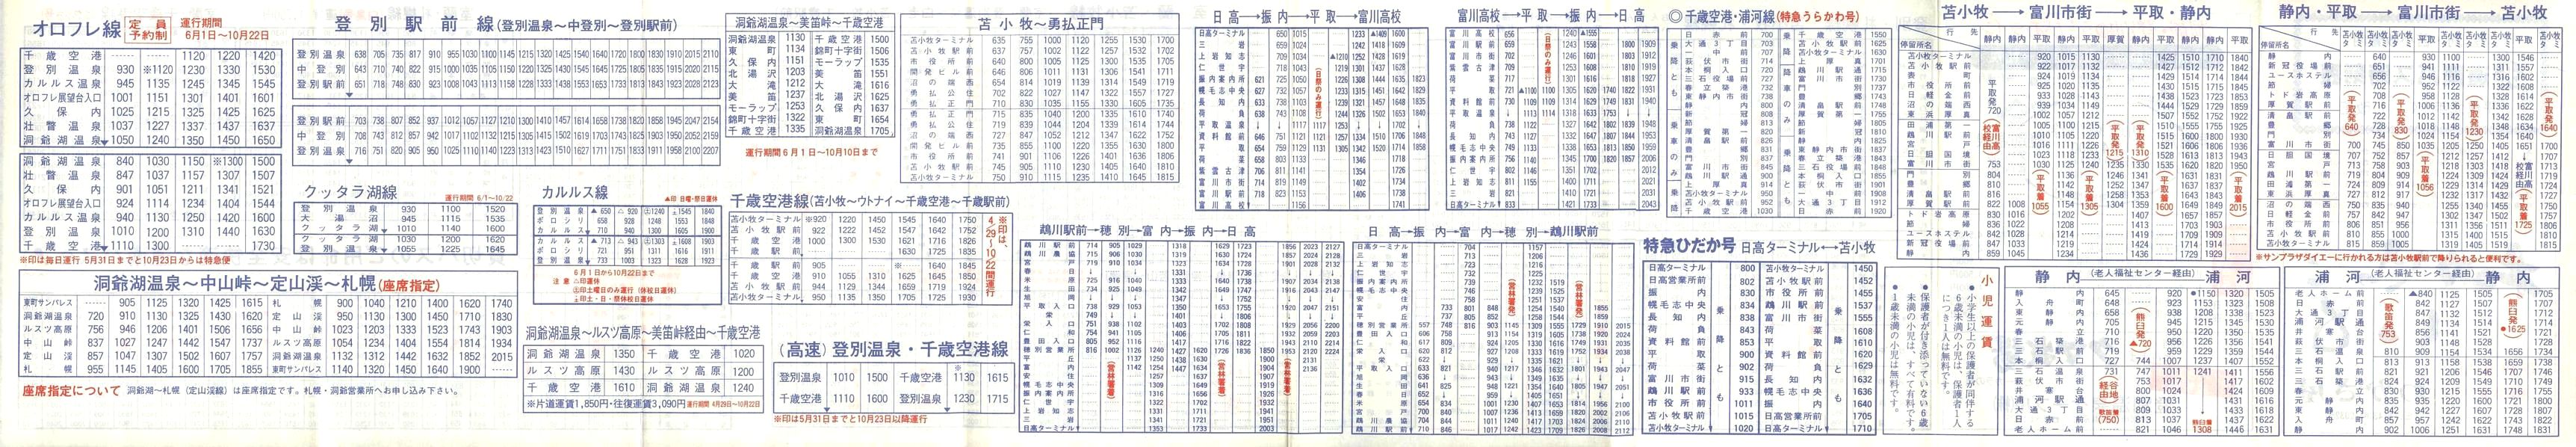 1989-04-01改正_道南バス_登別・苫小牧管内時刻表裏面